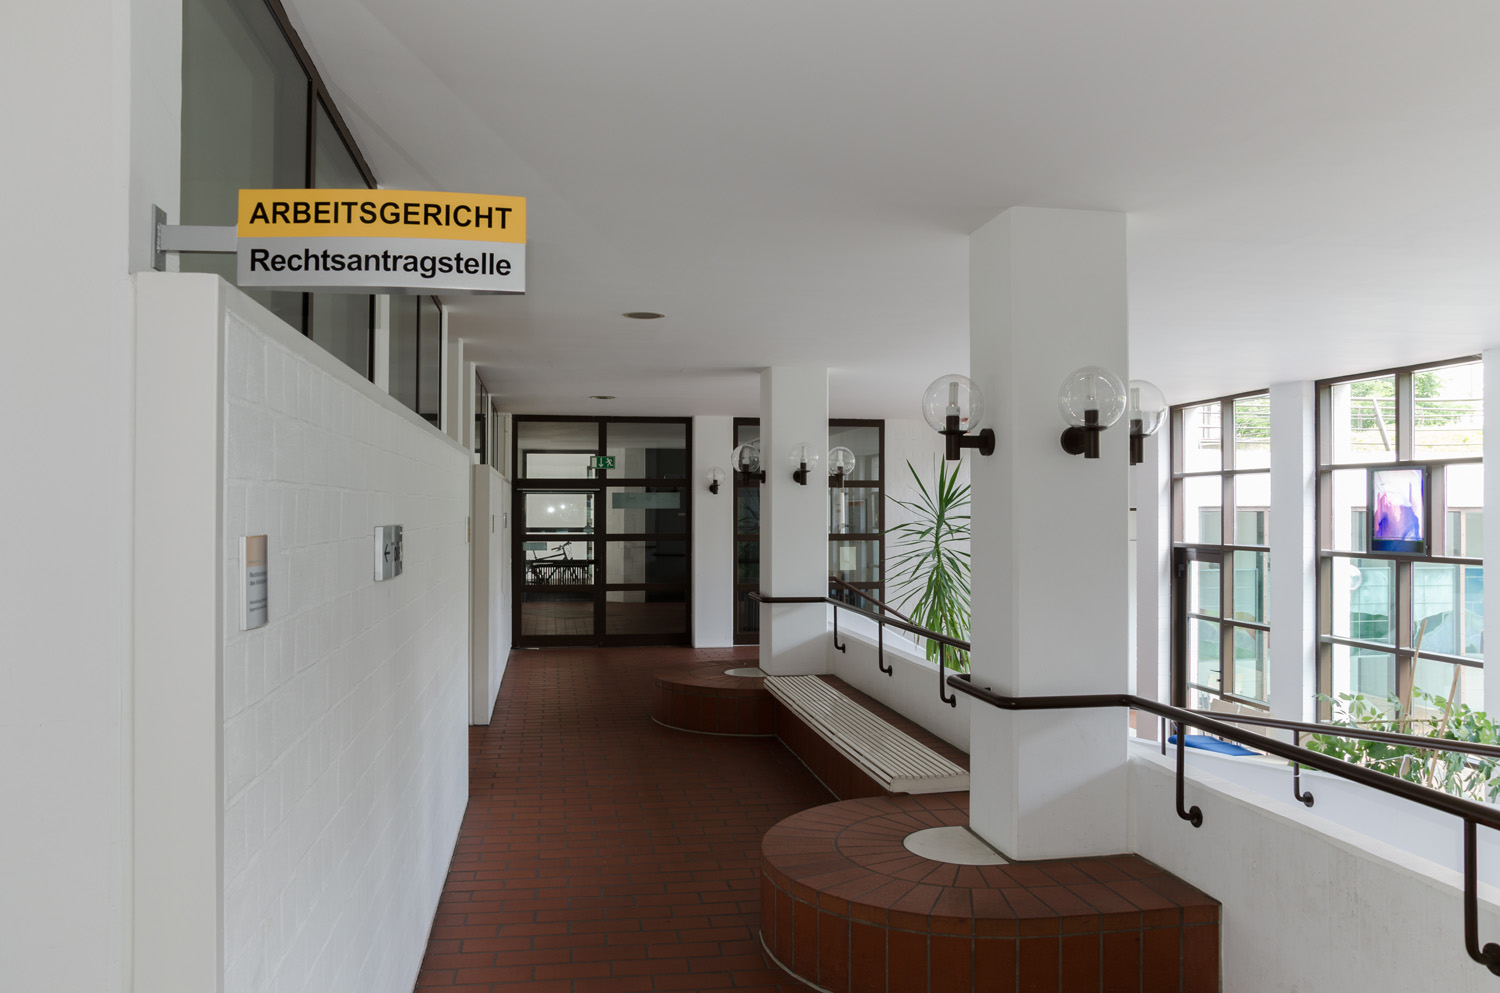 Bild zeigt den Eingangsbereich zur Rechtsantragstelle des Arbeitsgericht Ulm